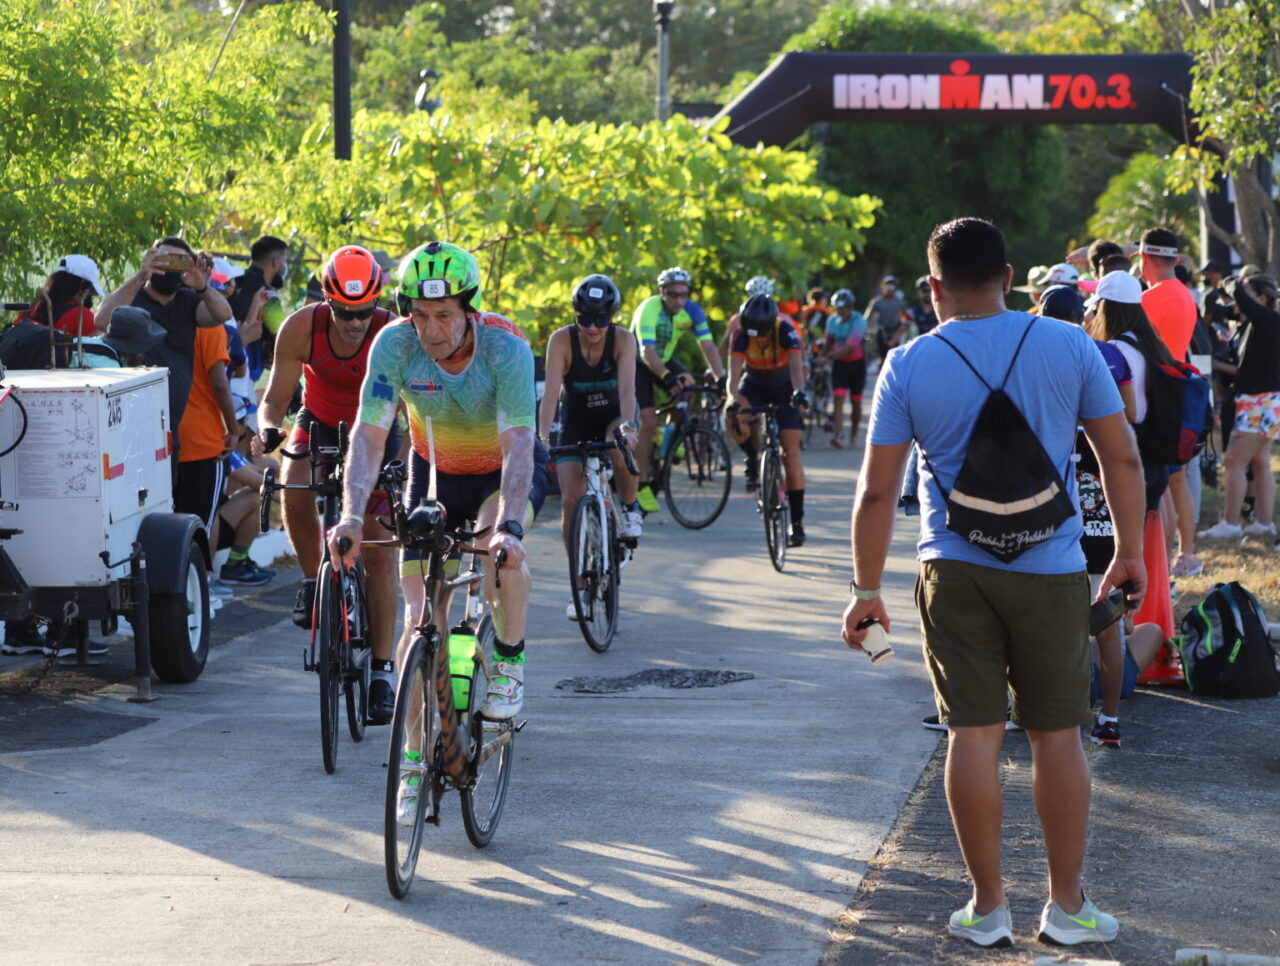 Alcaldía de Panamá confirma apoyo a ‘Ironman 70.3’ por dos años